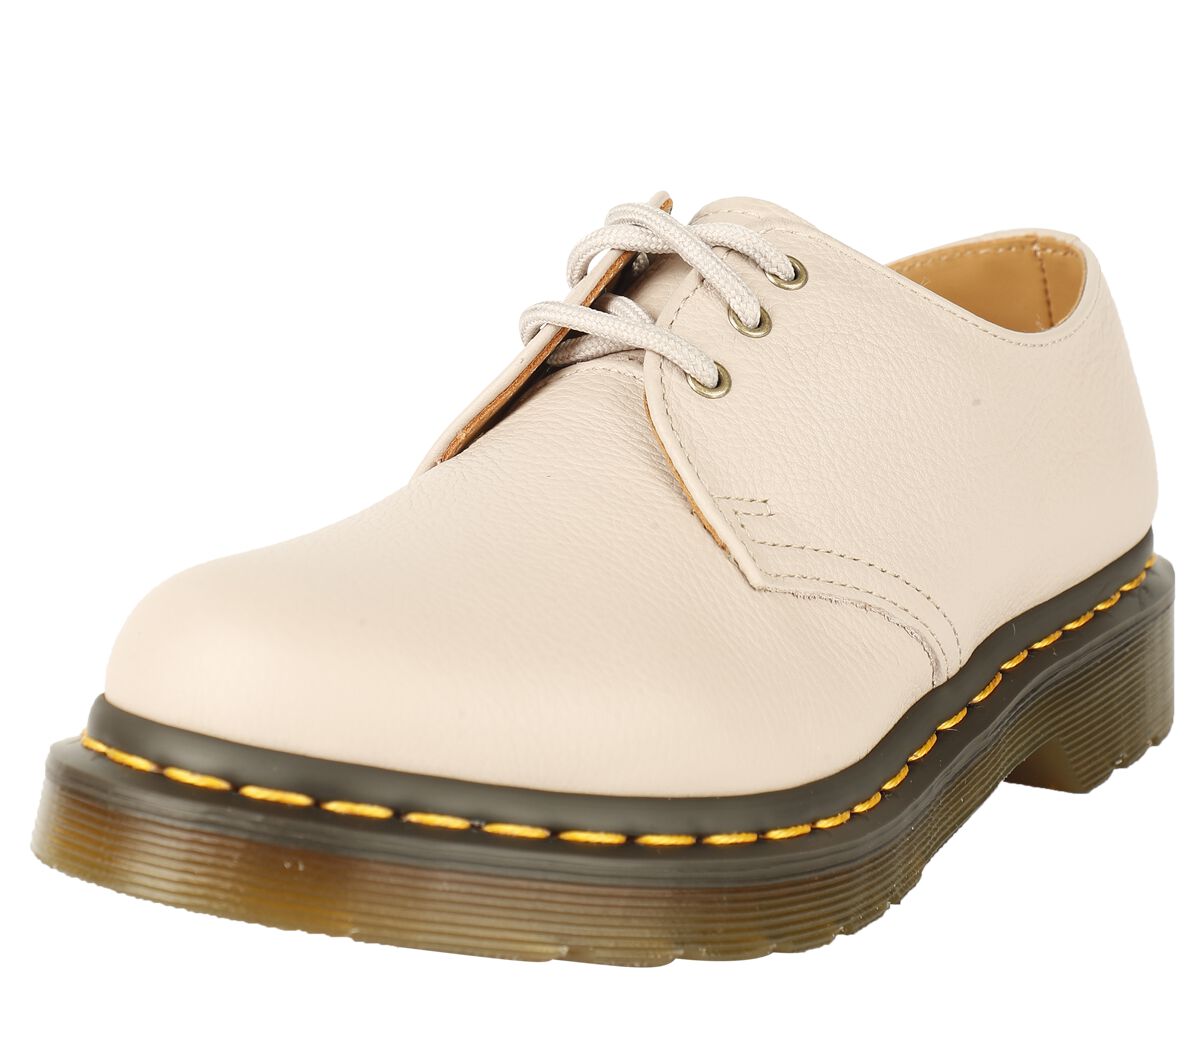 dr. martens chaussures basses de - 1461 - vintage taupe virginia - eu36 Ã  eu41 - pour femme - gris clair donna